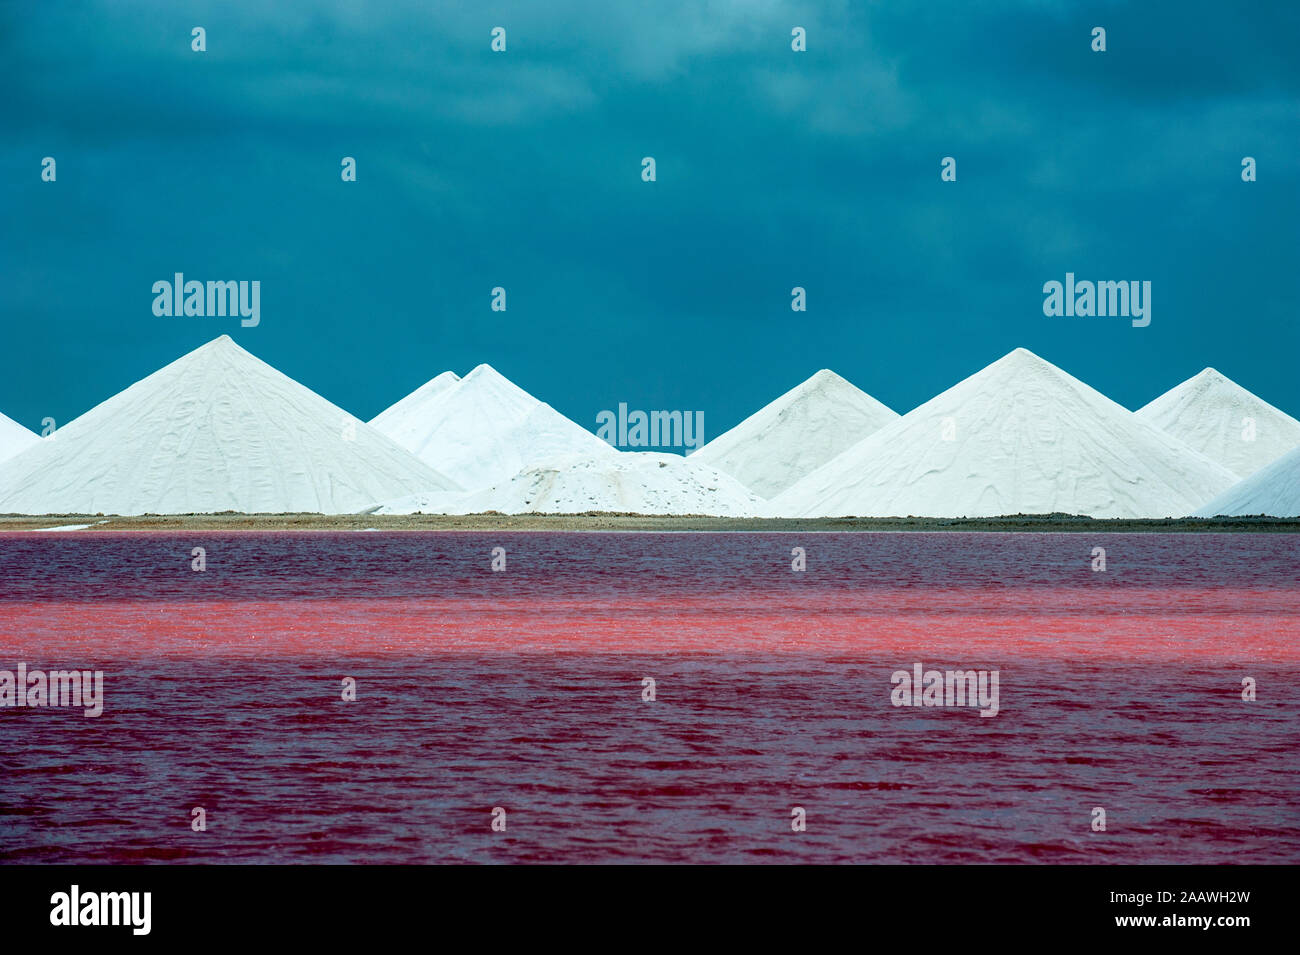 Anzeigen von Salt Lake gegen den blauen Himmel, Bonaire, Karibik Niederlande Stockfoto